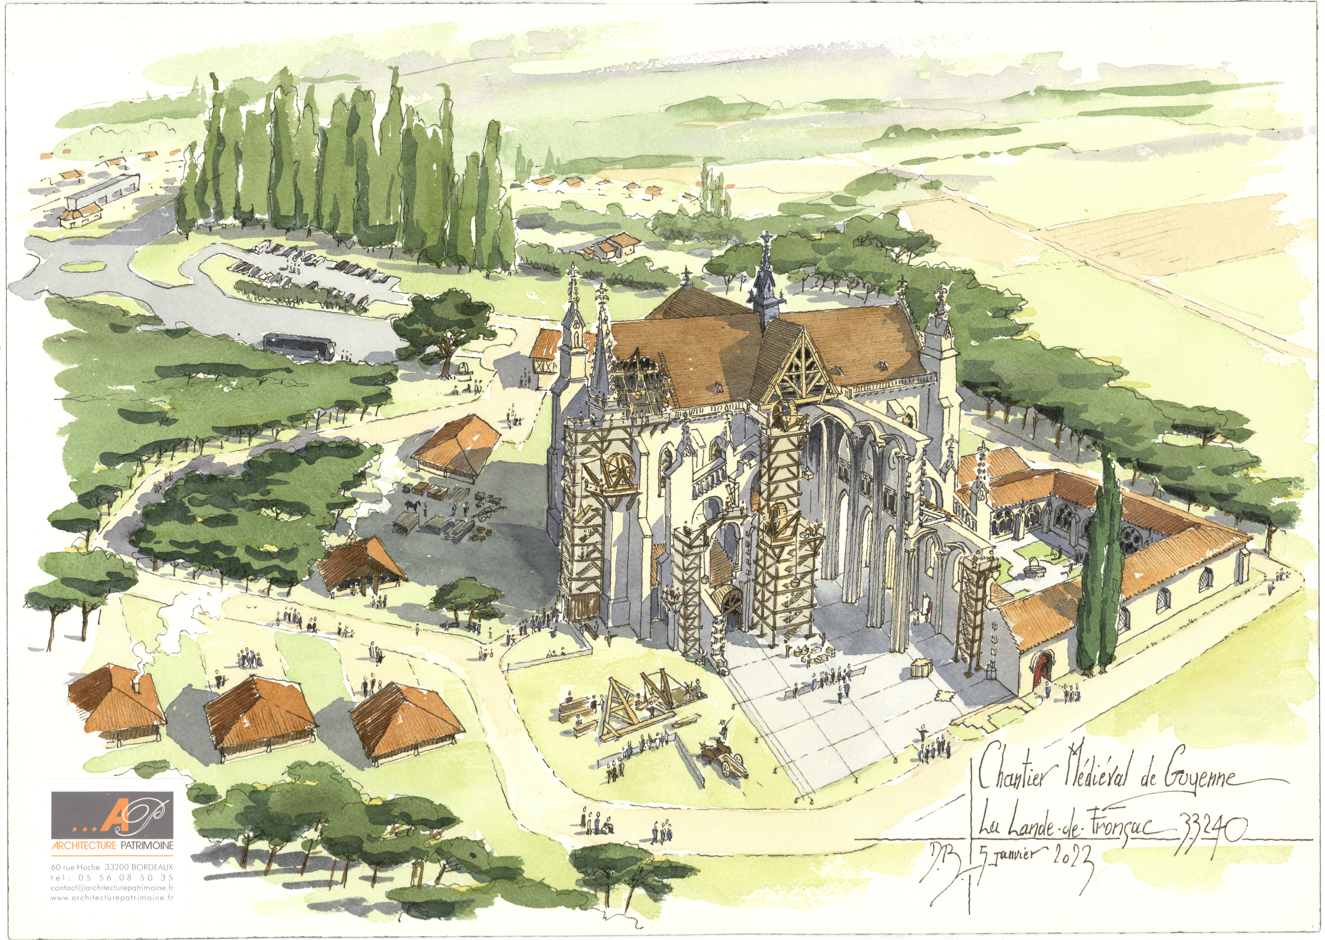 Ici on retrouve l'histoire de l'homme : à La Lande-de-Fronsac, un chantier médiéval avec des méthodes ancestrales